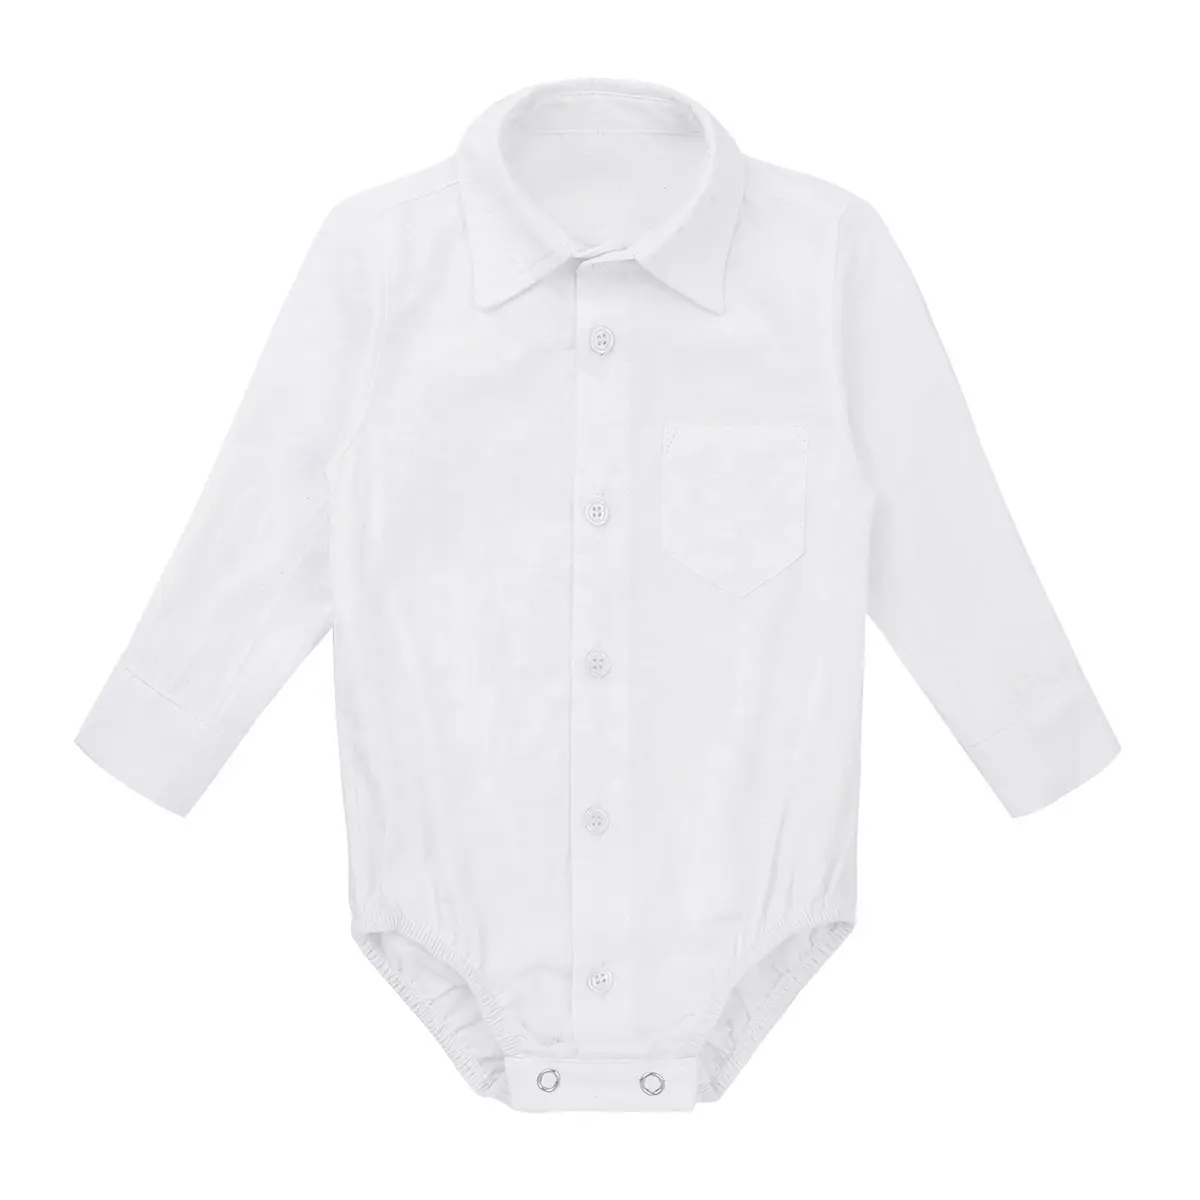 Bebek bebek giysileri Boys uzun kollu resmi beyefendi gömlek Romper bebek kıyafetleri tulum tulum yenidoğan 3 ila 24 ay